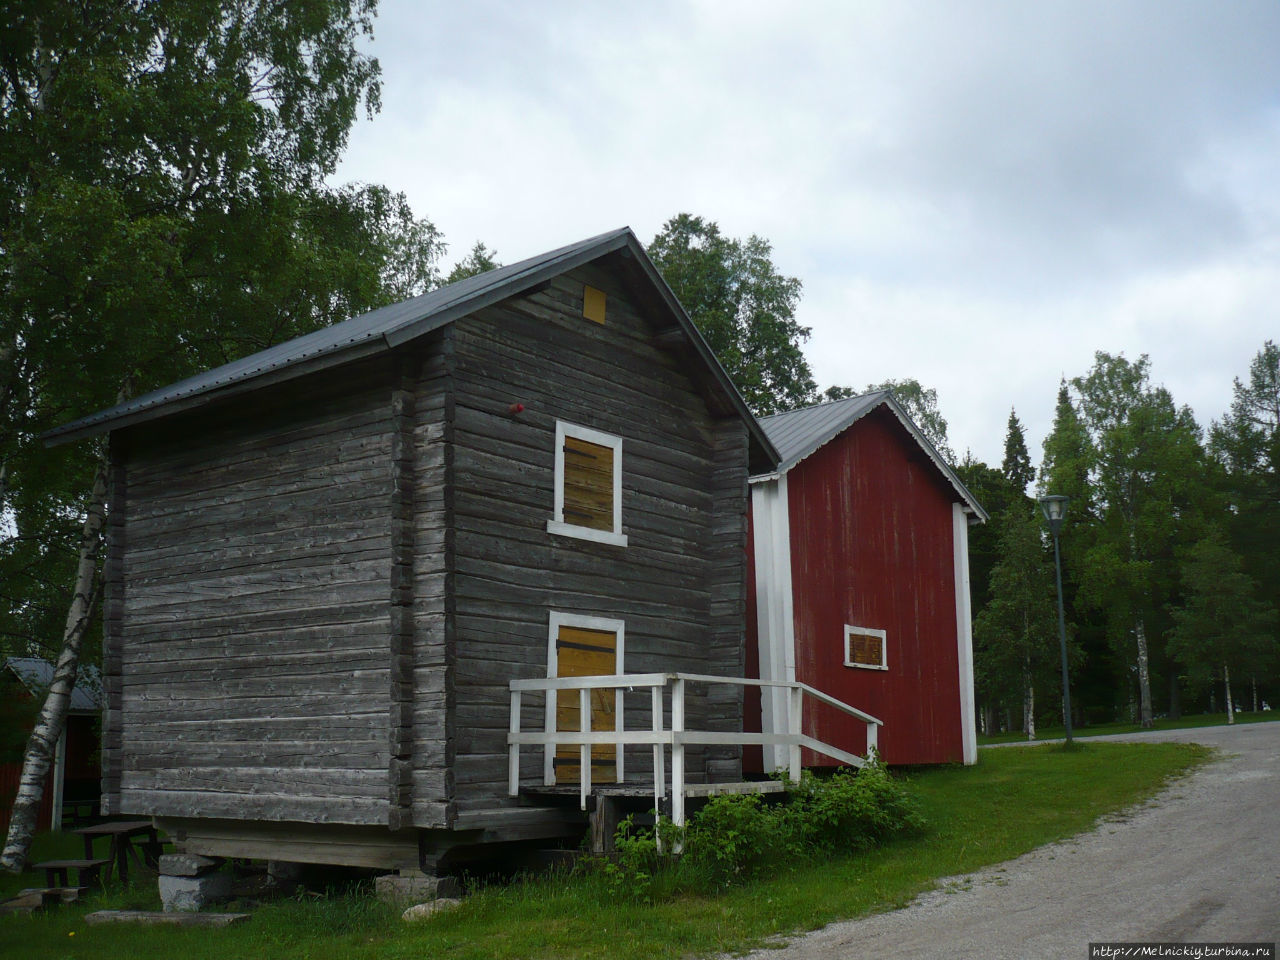 Пешком по старым кварталам Кеми Кеми, Финляндия